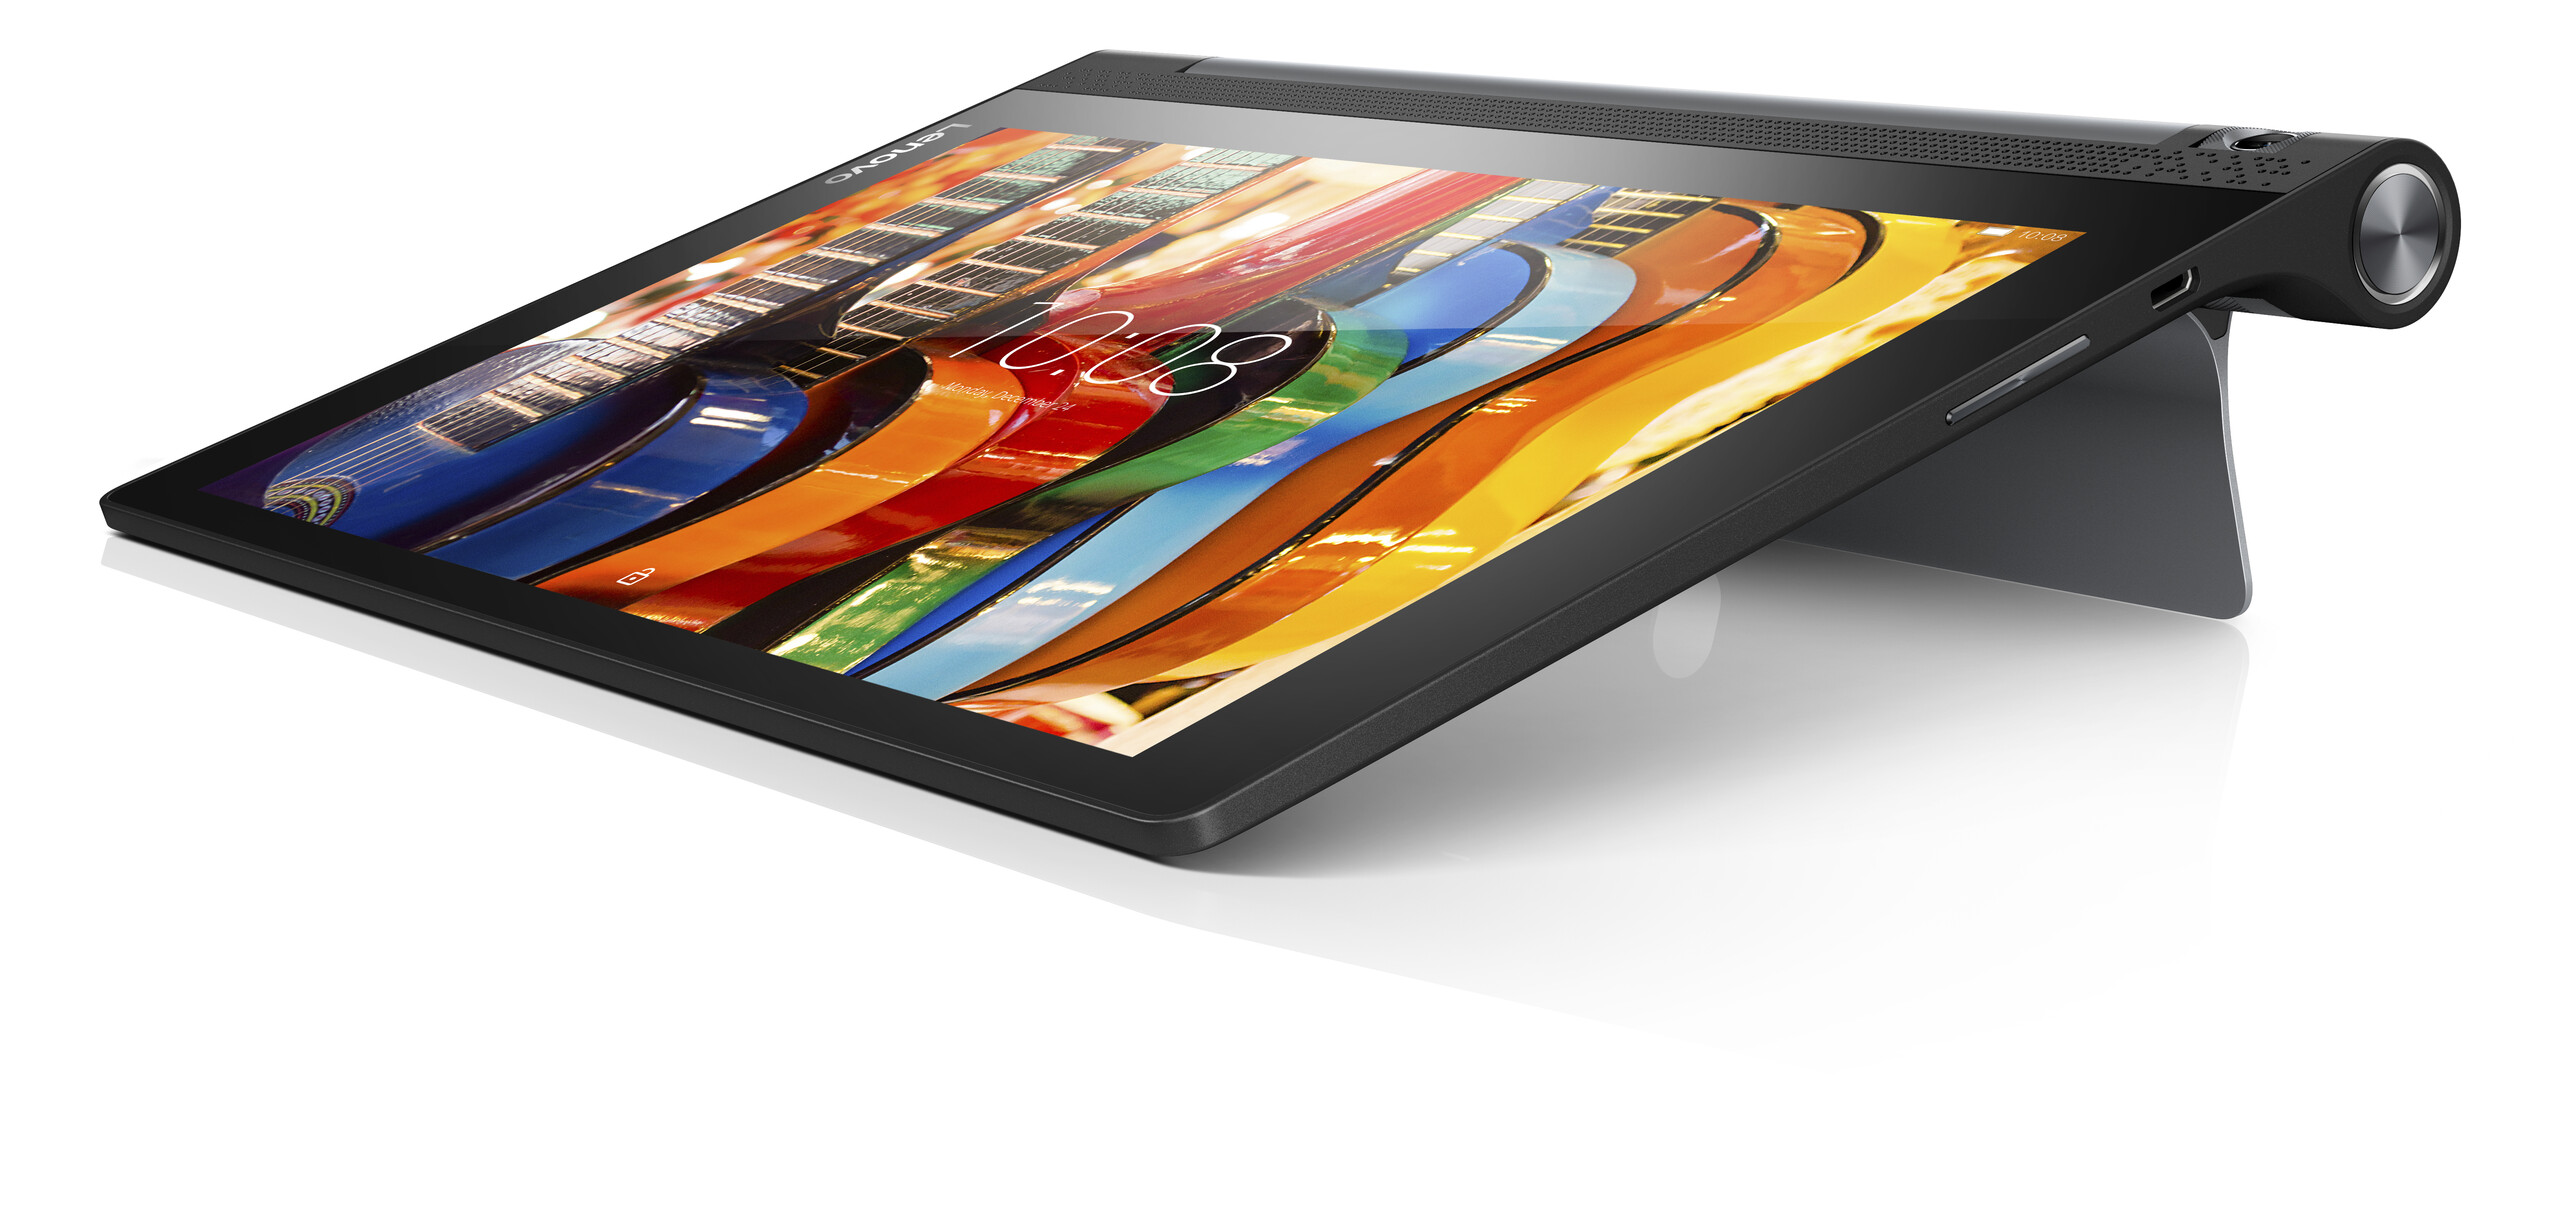 Lenovo Yoga Tab 3 10 Tablet Review -  Reviews